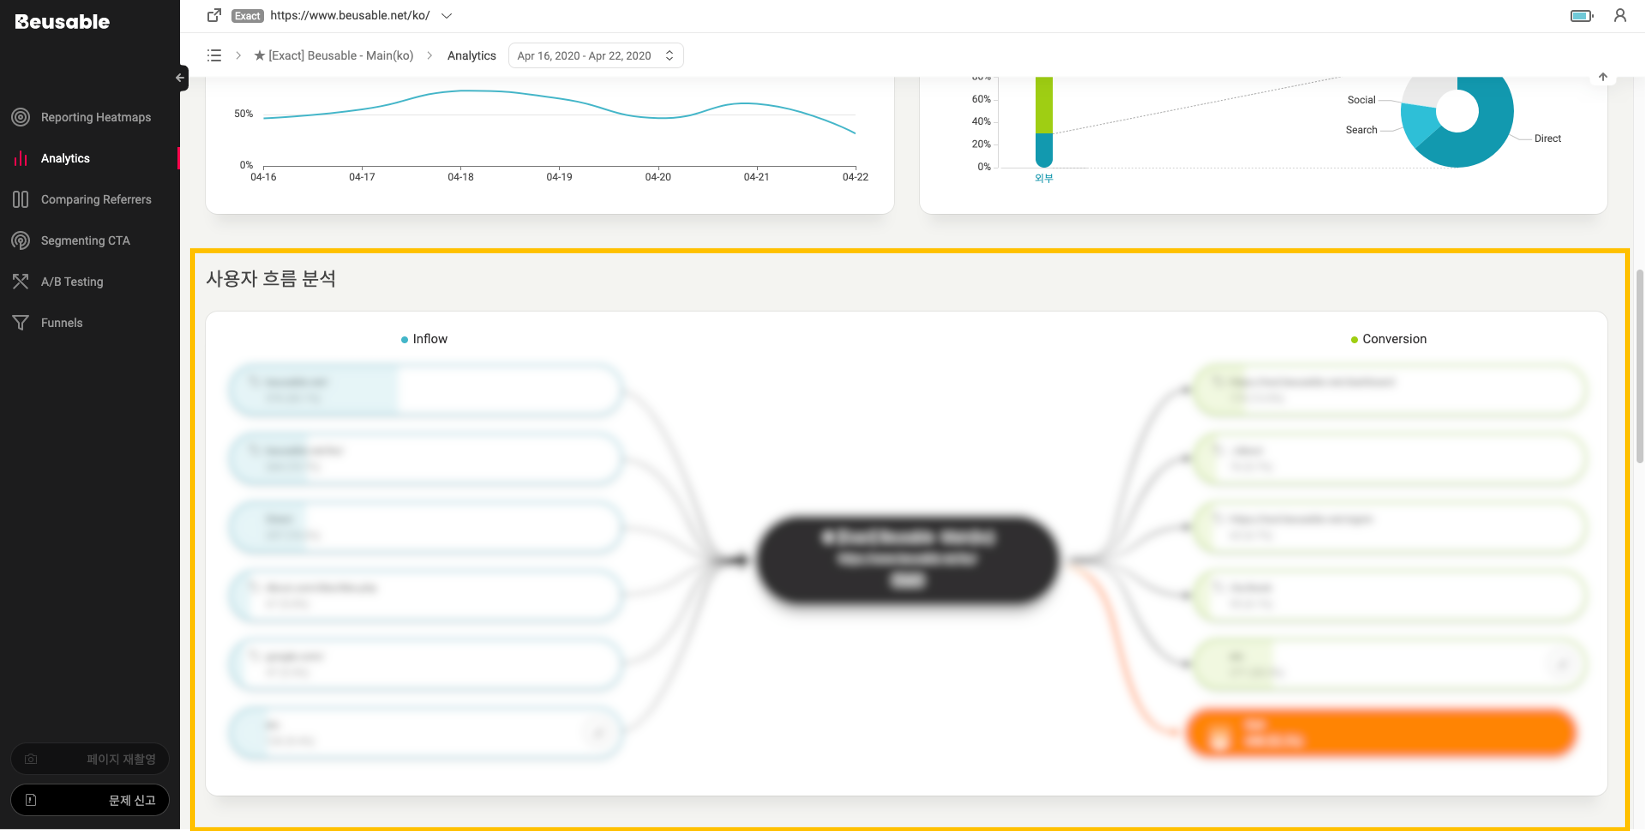 뷰저블 좌측 메뉴 중 Analytics에서 사용자 흐름 분석 기능을 보여주는 화면입니다.